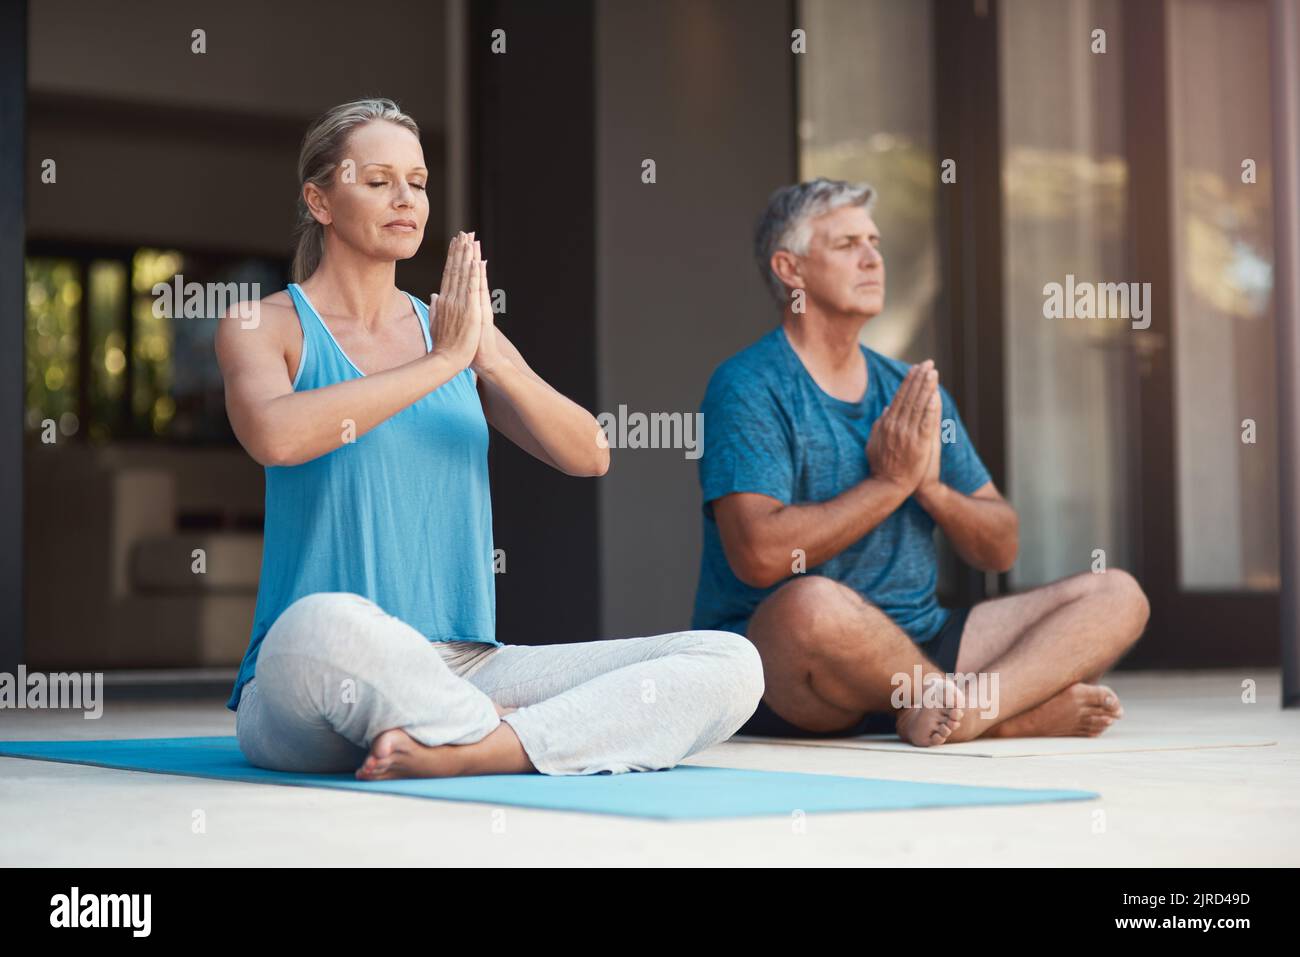 Friedliche Geister sind glückliche Geister. Ein reifes Paar tritt friedlich in eine Yoga-Pose mit gekreuzten Beinen und zusammengesteppten Händen ein. Stockfoto